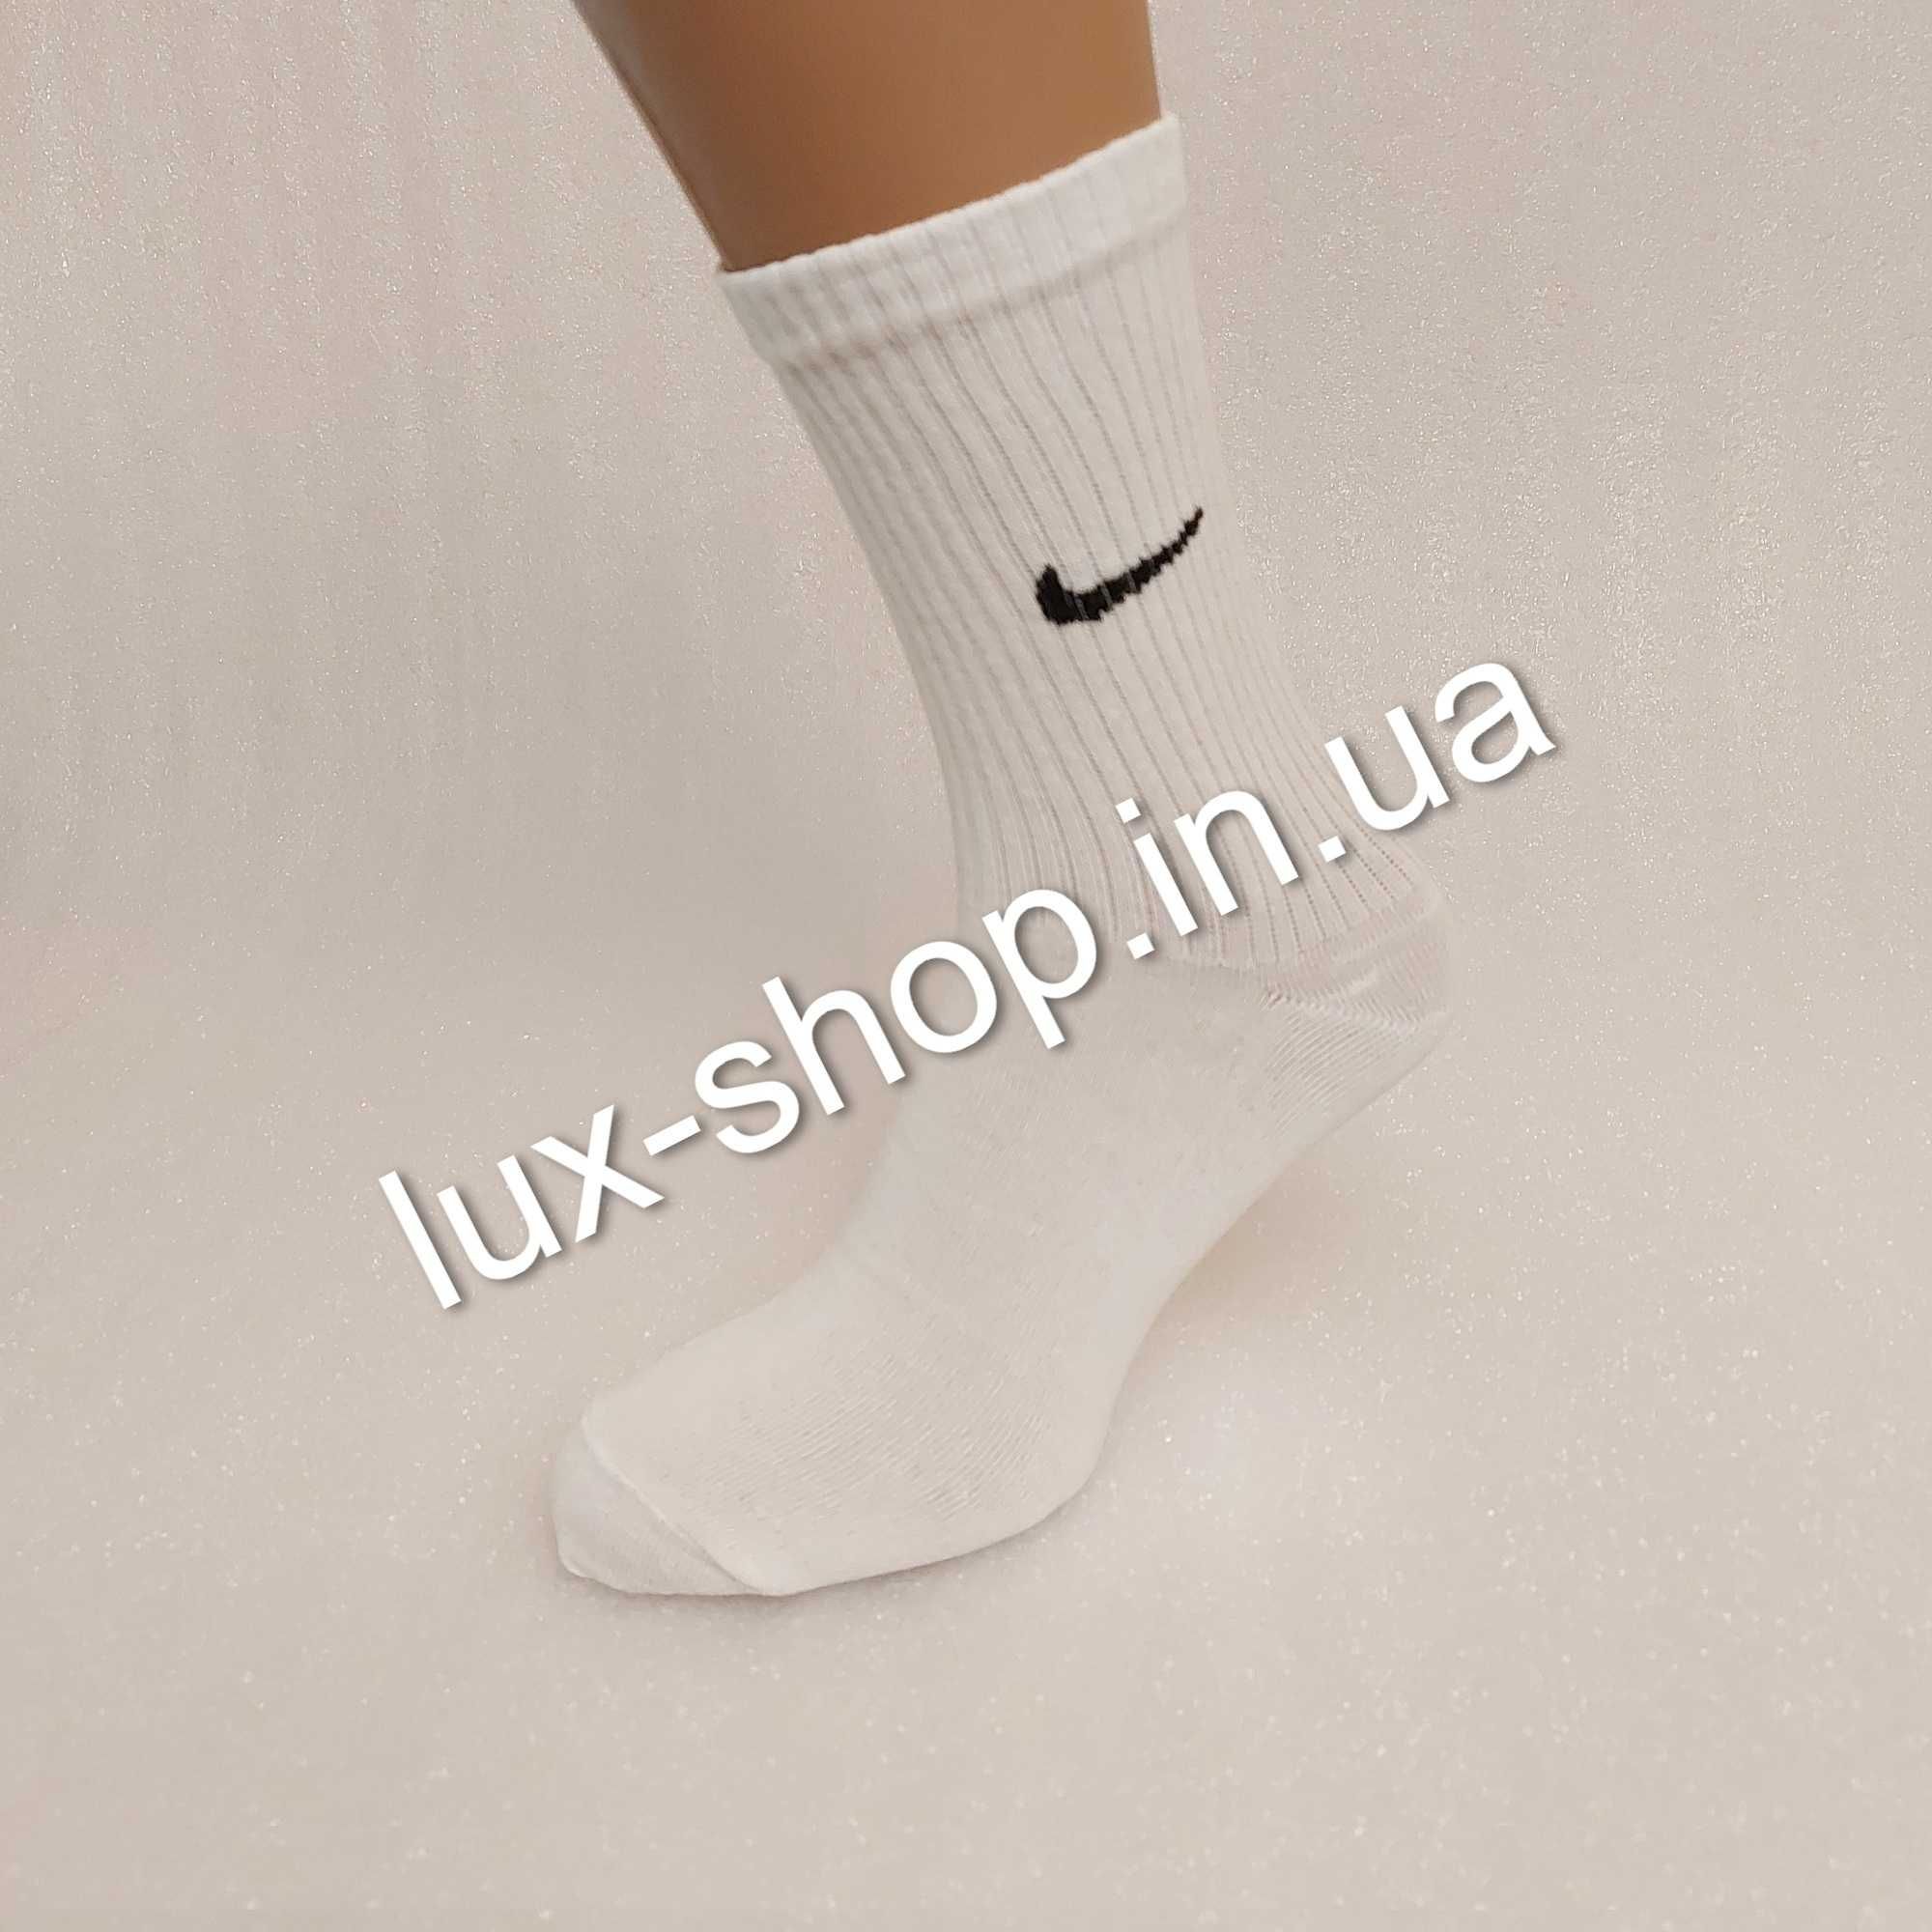 Шкарпетки Nike / найк носки в пачке 12 пар (супер качество)